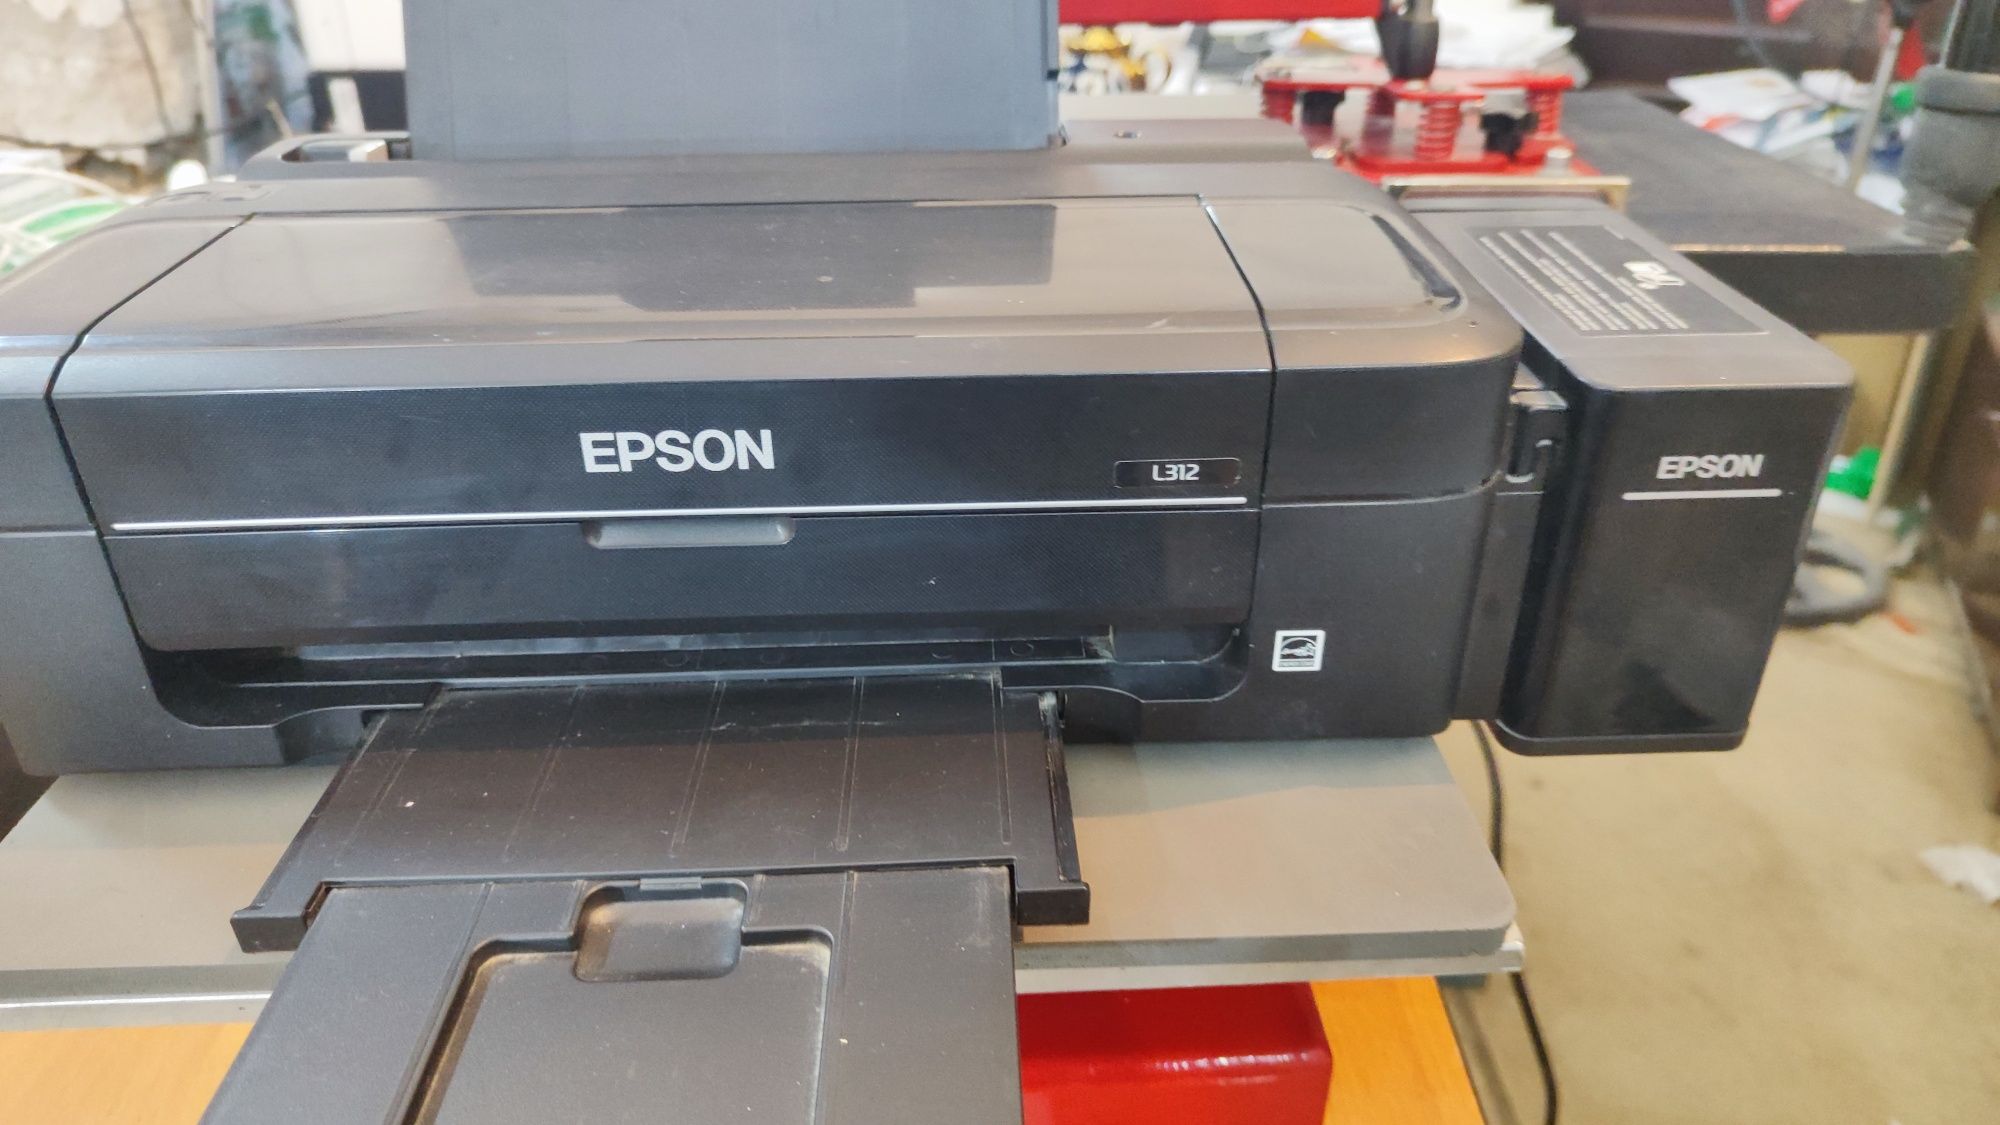 Tayyor biznes Printer sublimatsiya Epson L312+bakalga rasm urish appar